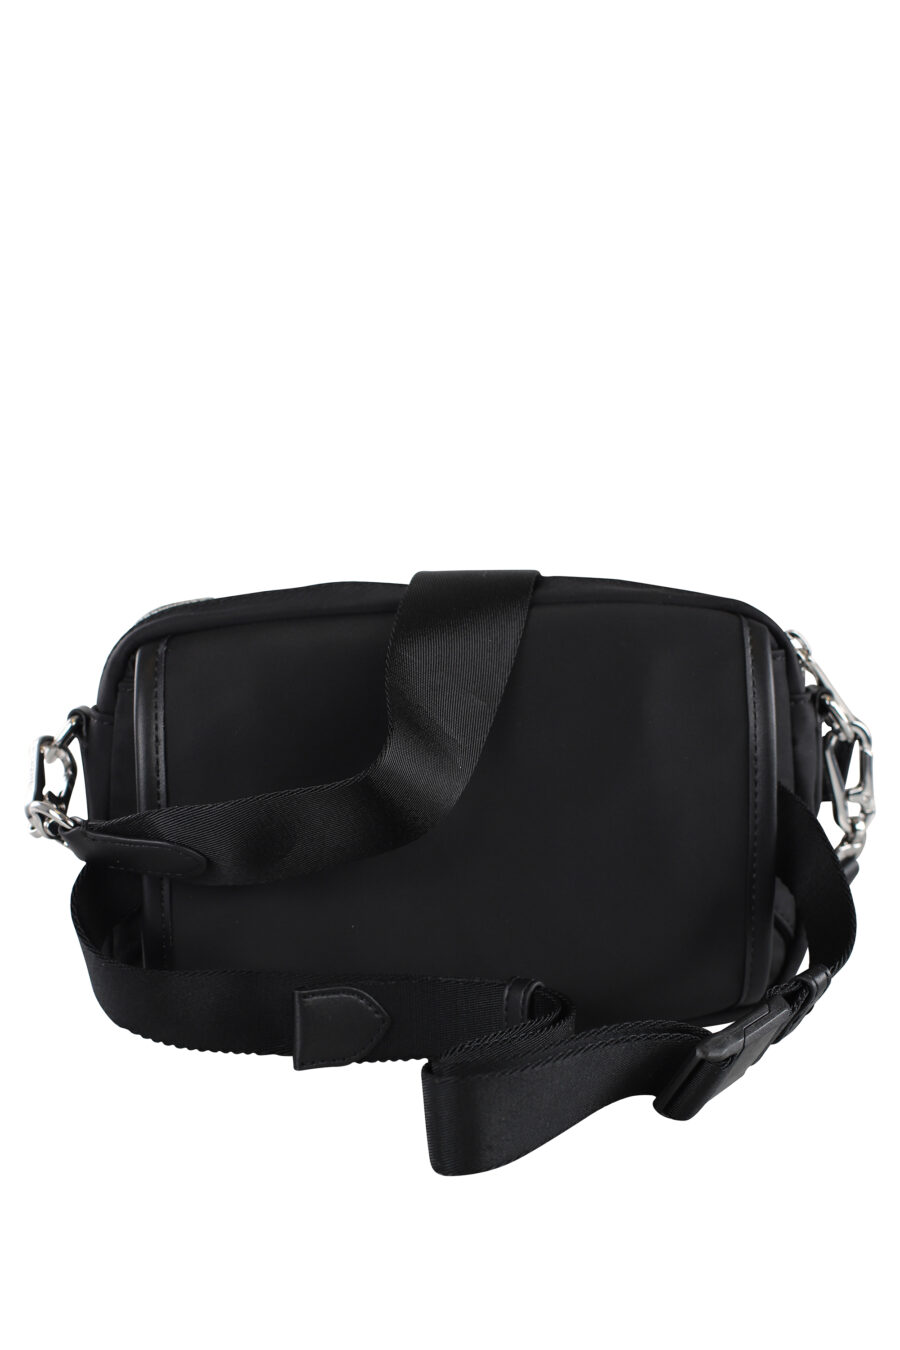 Black shoulder bag with optional maxilogo "karl" fanny pack - IMG 6994